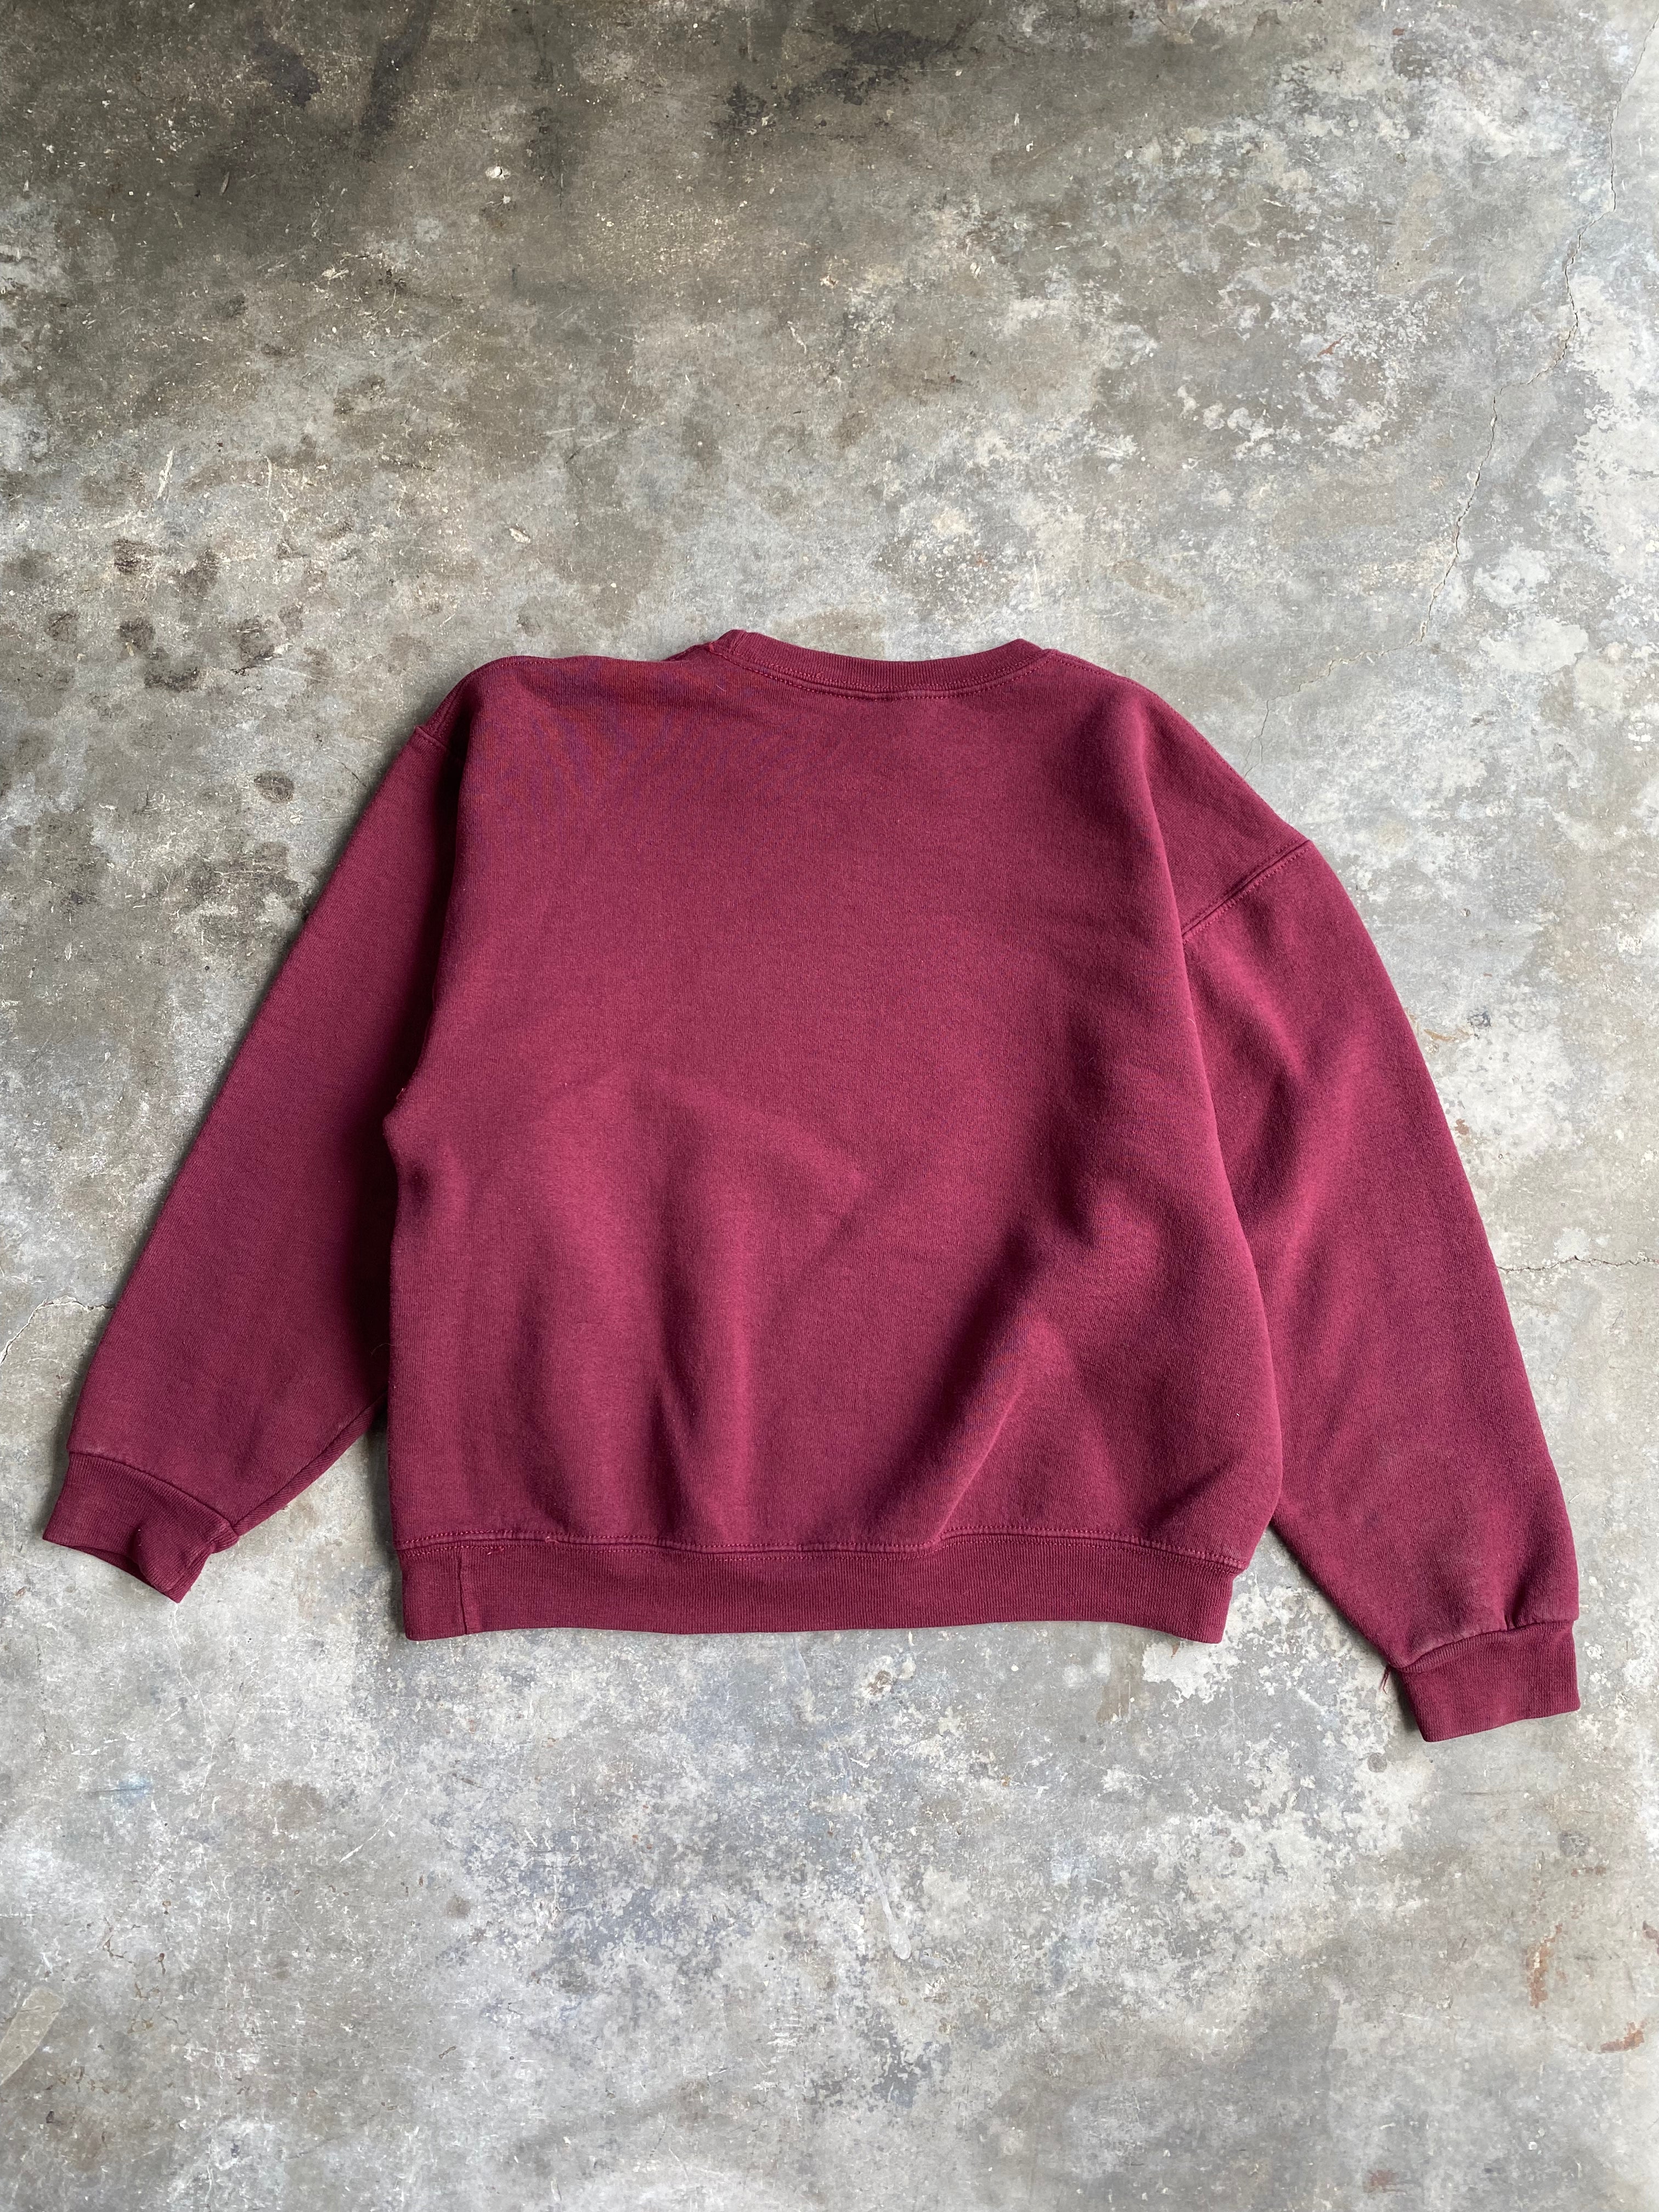 Vintage Russel Sweatshirt - M